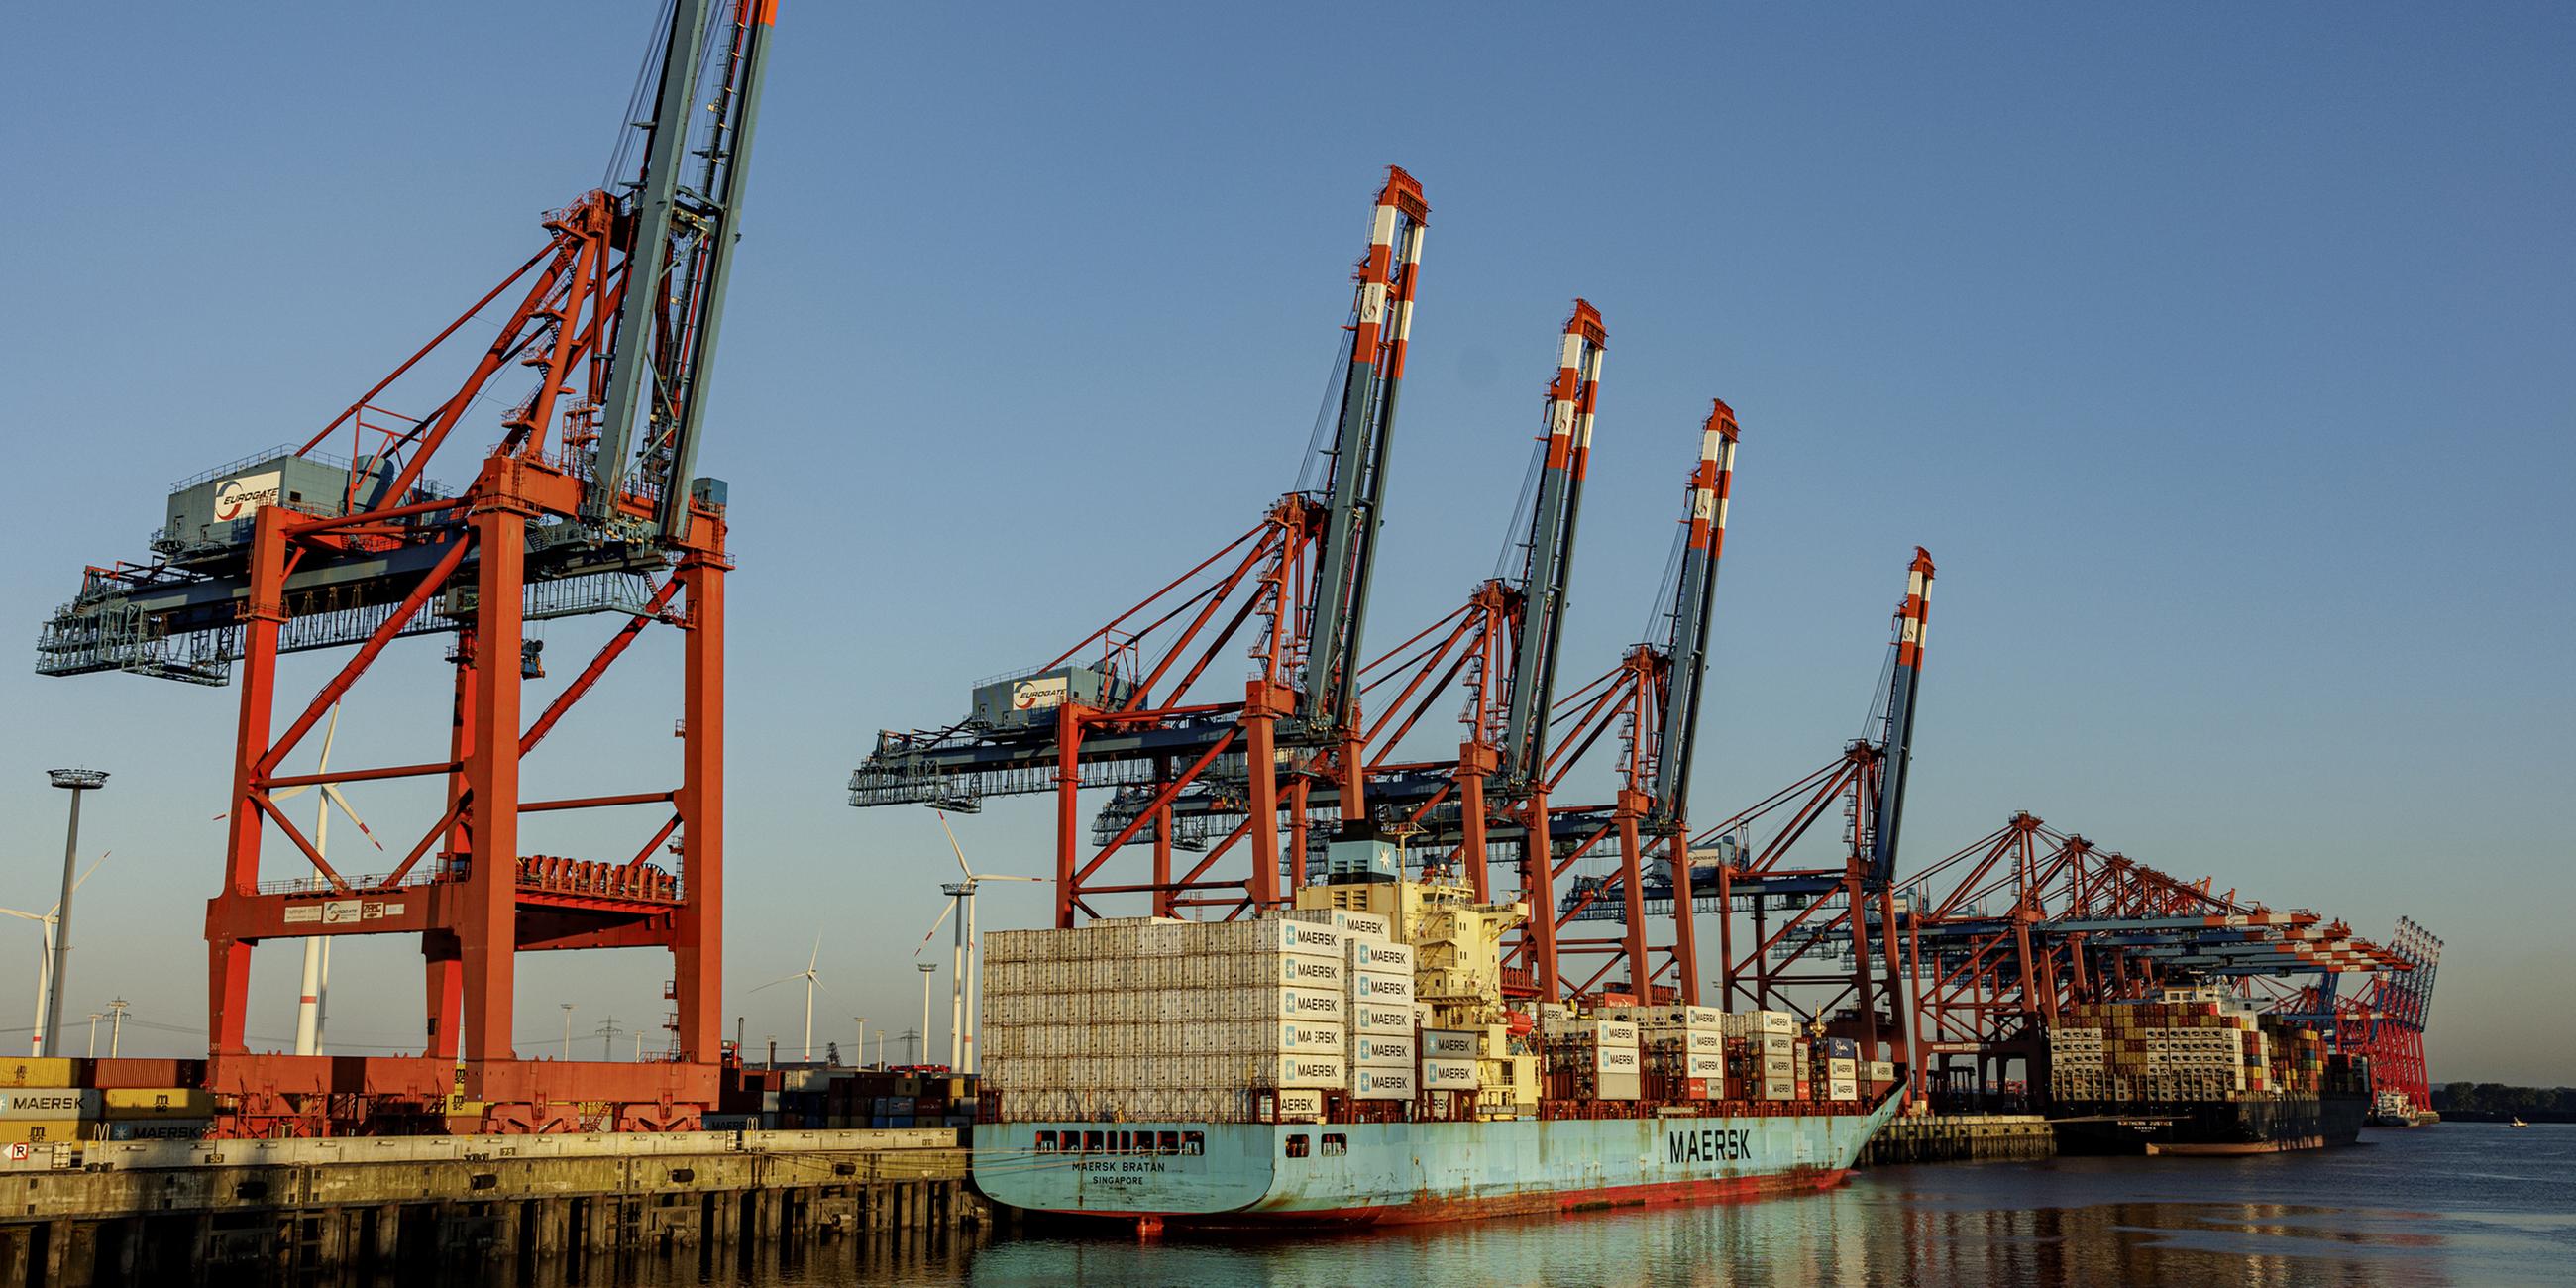 ARCHIV: Containerschiffe liegen zur Abfertigung an den Terminals im Hamburger Hafen. 